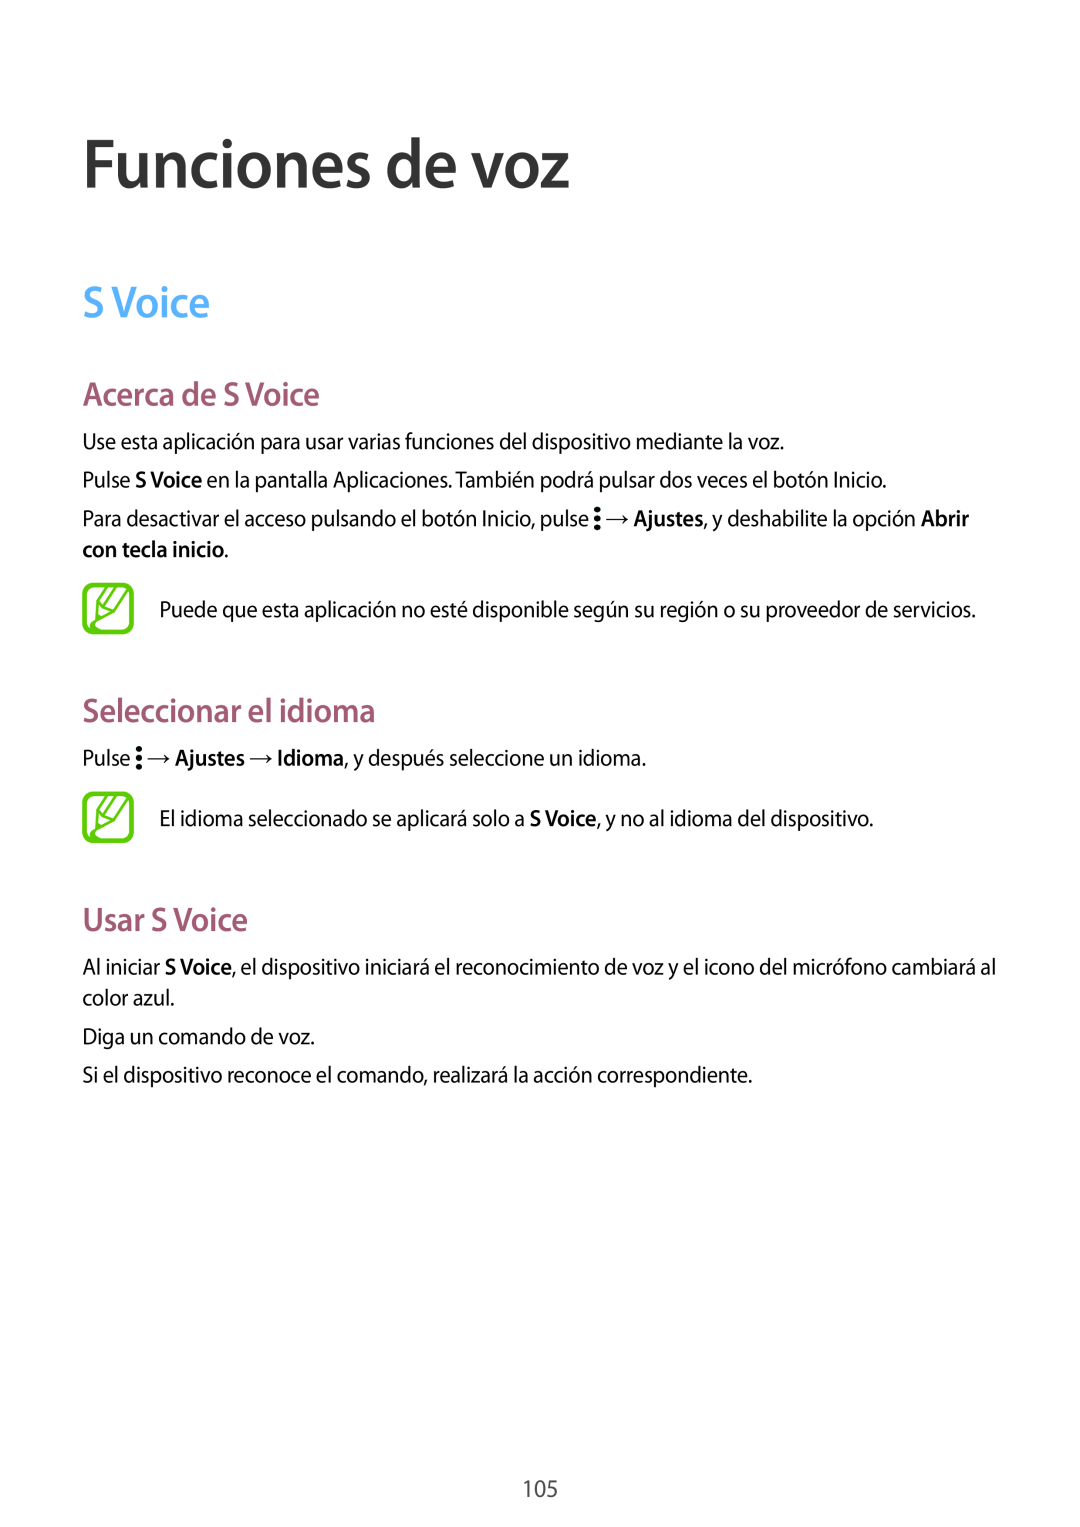 Samsung SM-G901FZBADTM, SM-G901FZKADBT manual Funciones de voz, Acerca de S Voice, Seleccionar el idioma, Usar S Voice 